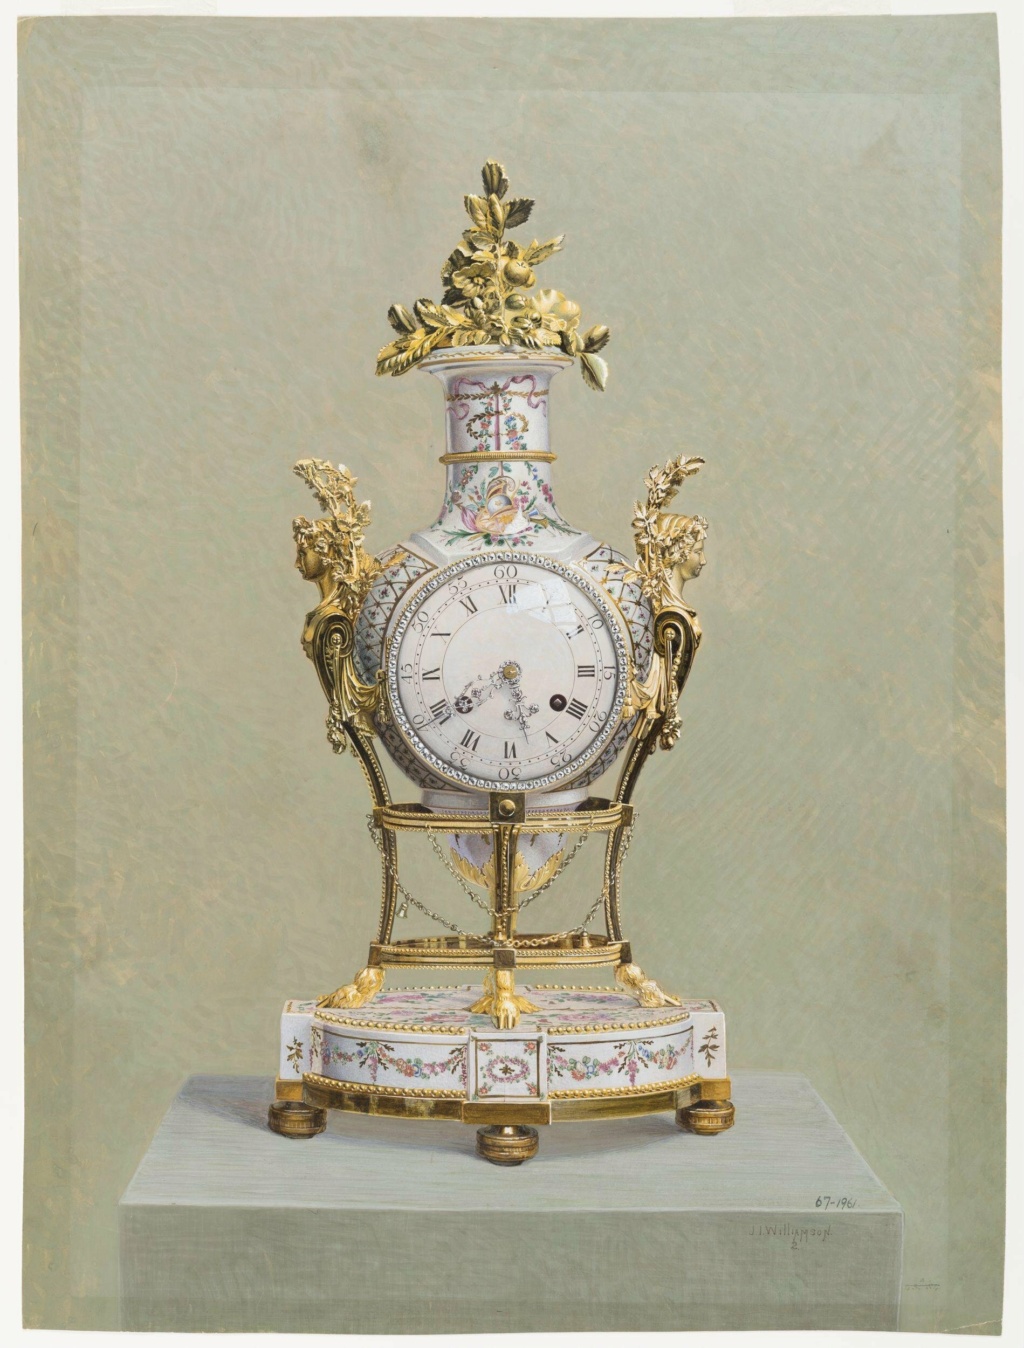 Pendules et horloges de Marie-Antoinette - Page 4 2016jg10